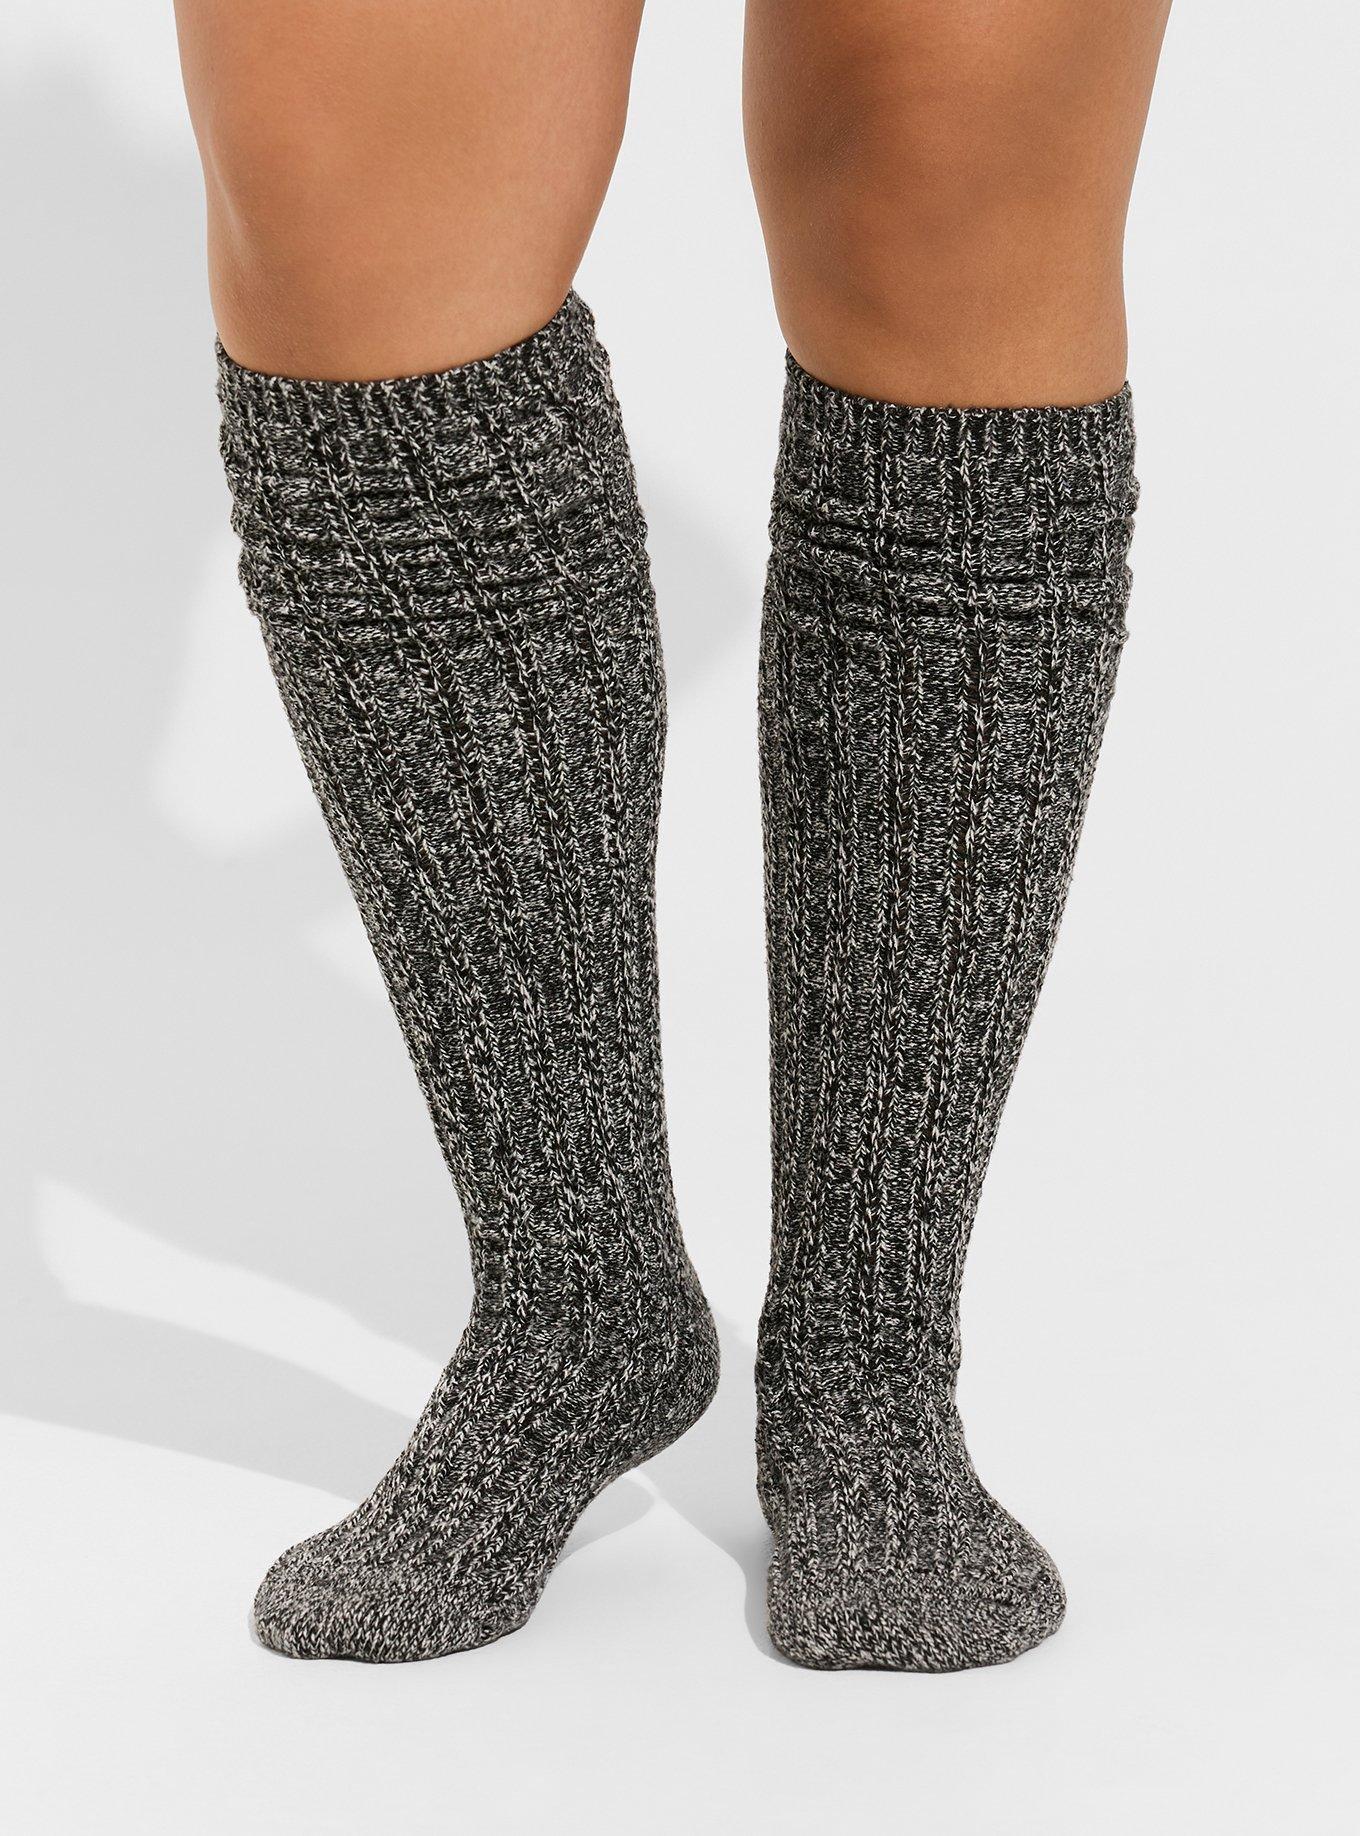 brent wickstrom recommends Torrid Knee High Socks